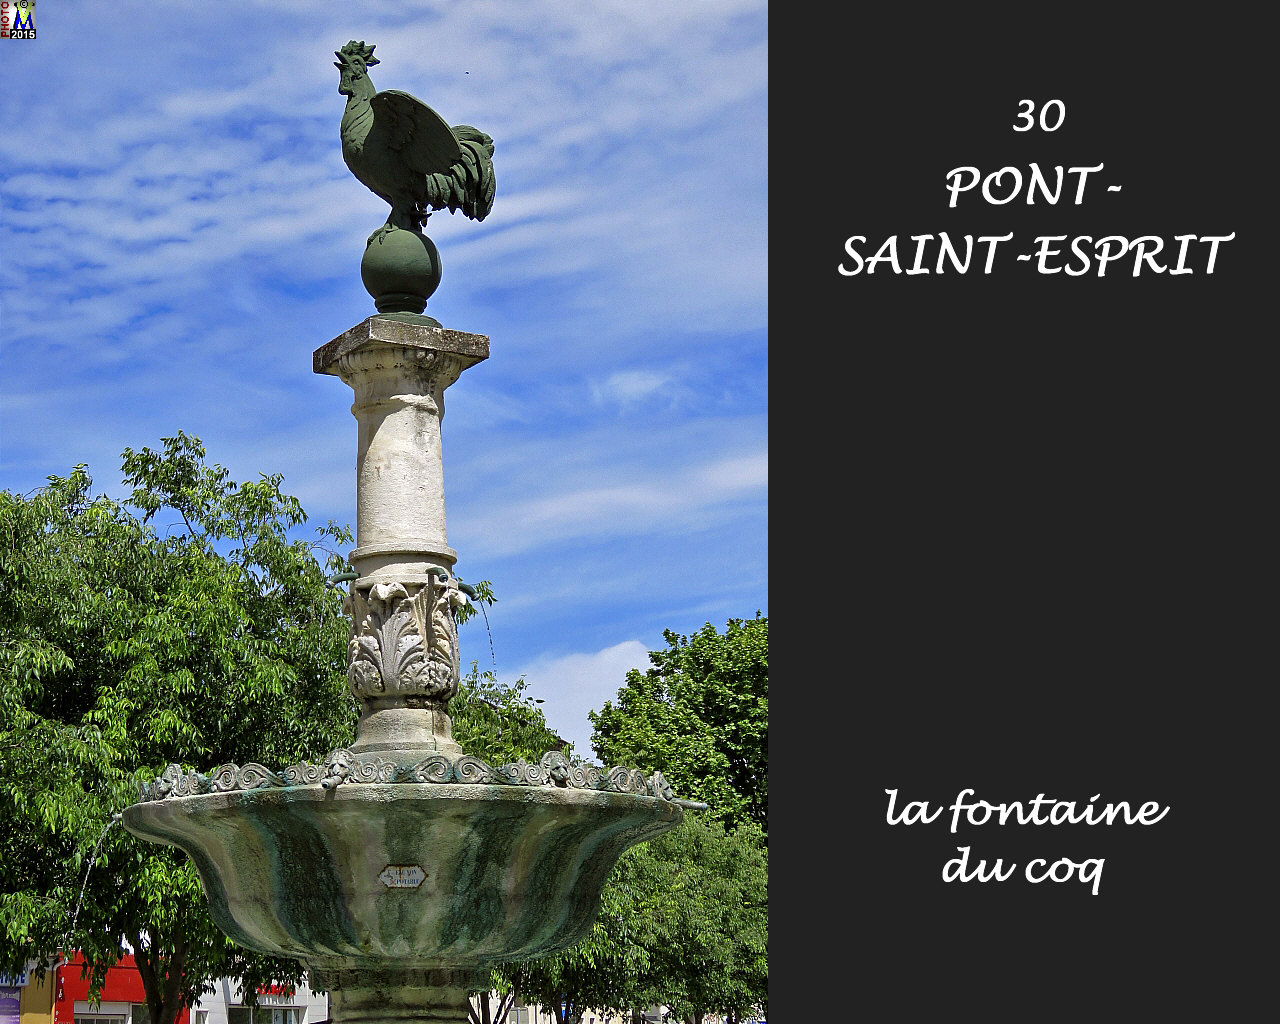 30PONT-SAINT-ESPRIT_fontaine_122.jpg